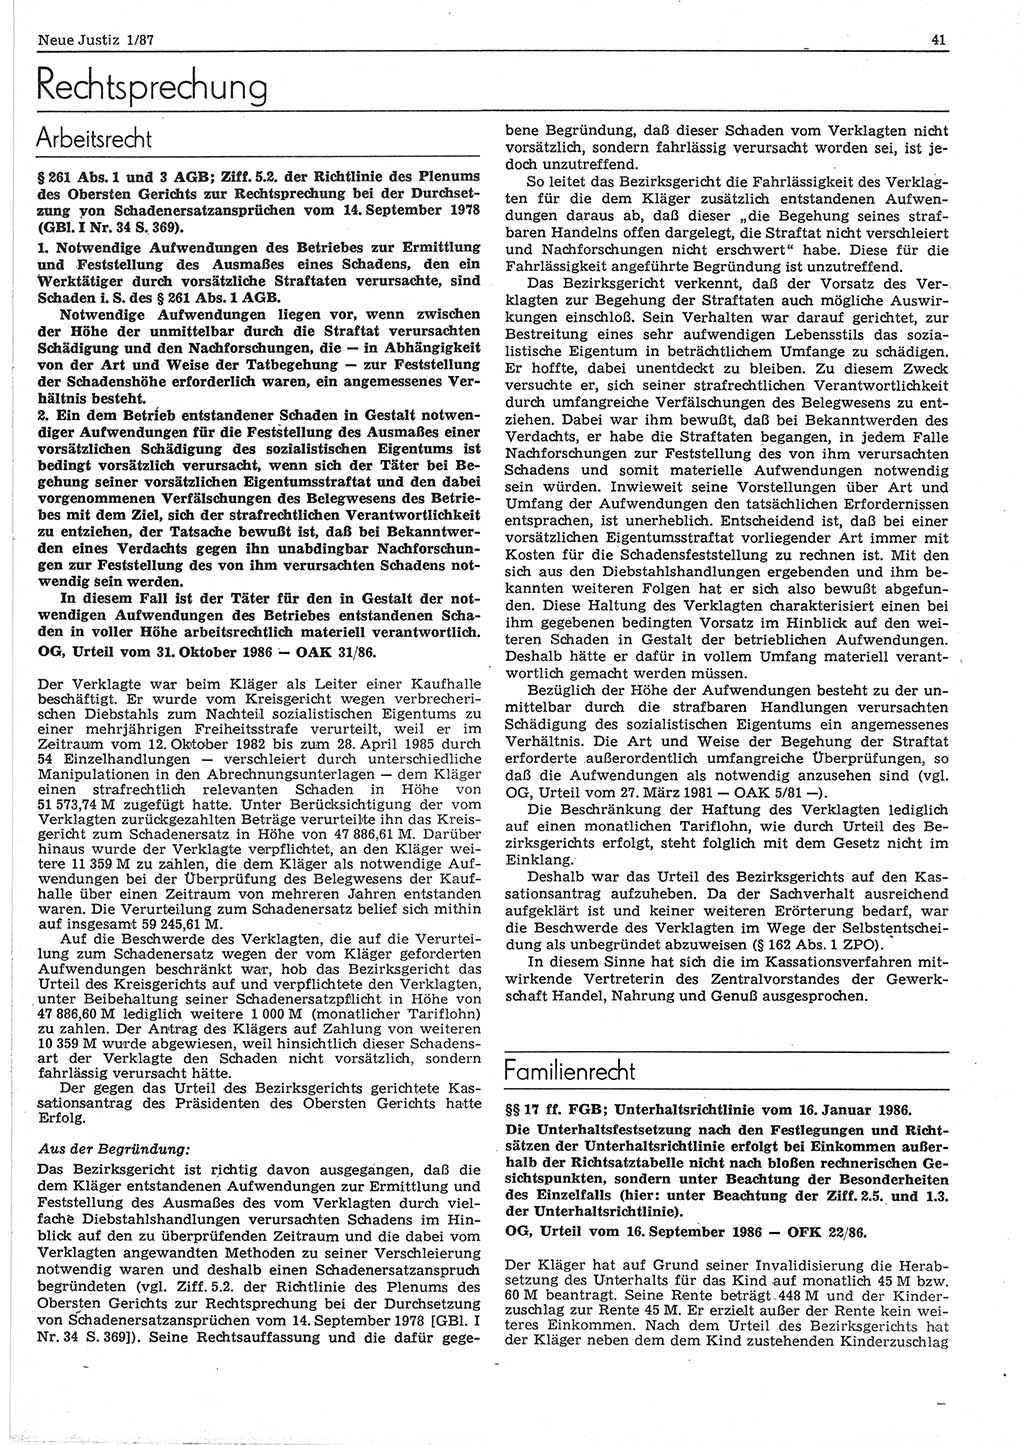 Neue Justiz (NJ), Zeitschrift für sozialistisches Recht und Gesetzlichkeit [Deutsche Demokratische Republik (DDR)], 41. Jahrgang 1987, Seite 41 (NJ DDR 1987, S. 41)